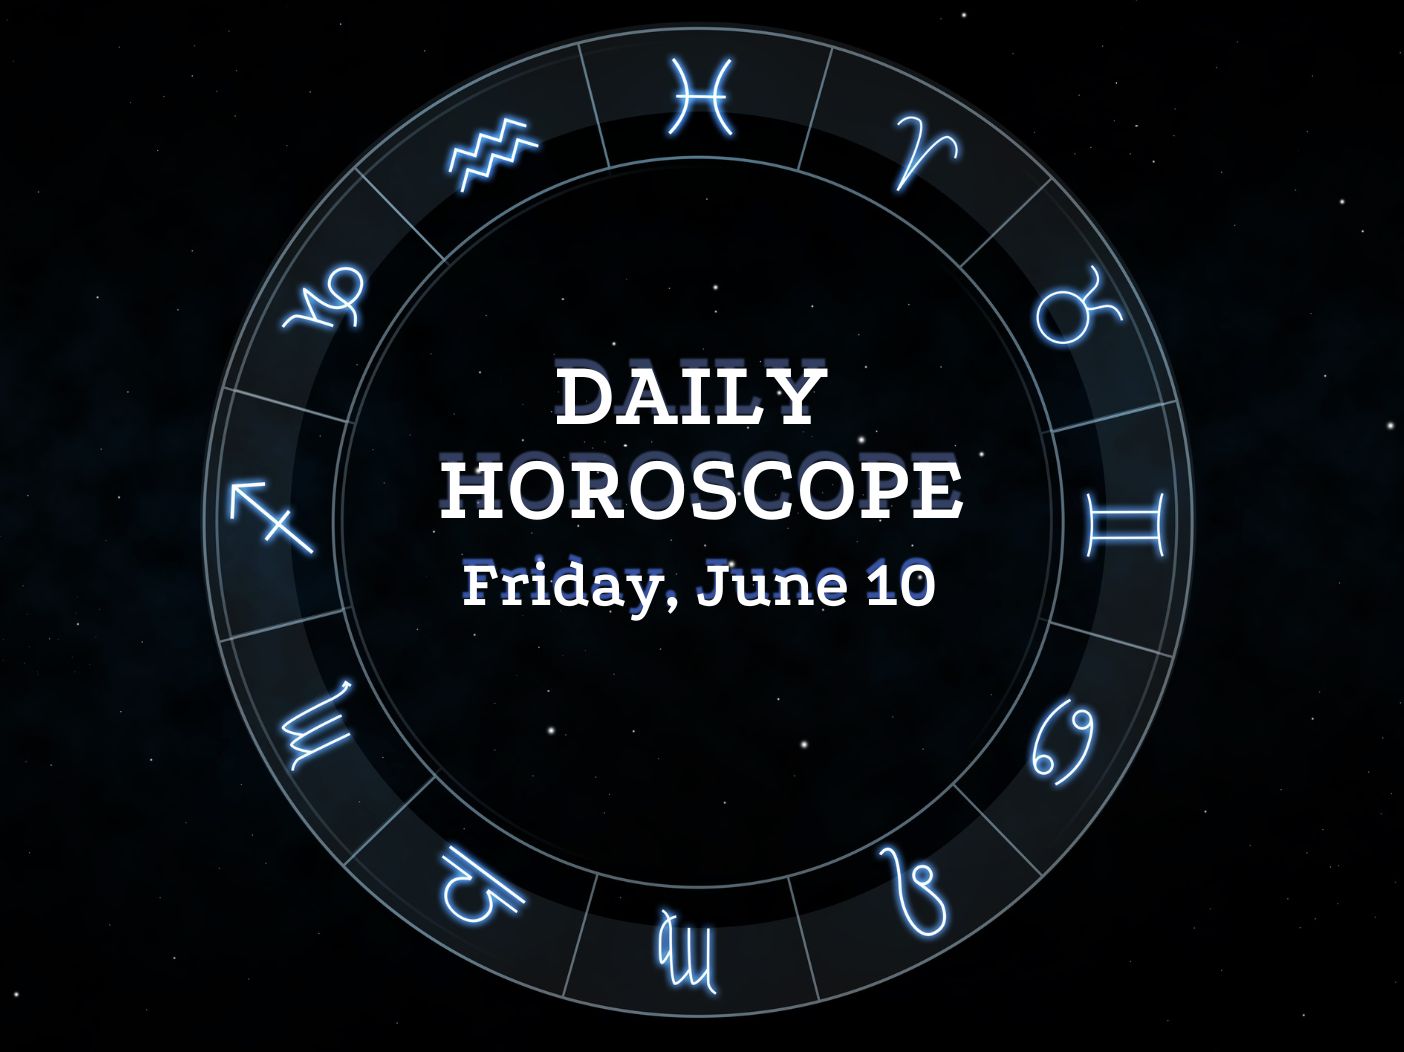 Friday June 10 horoscope